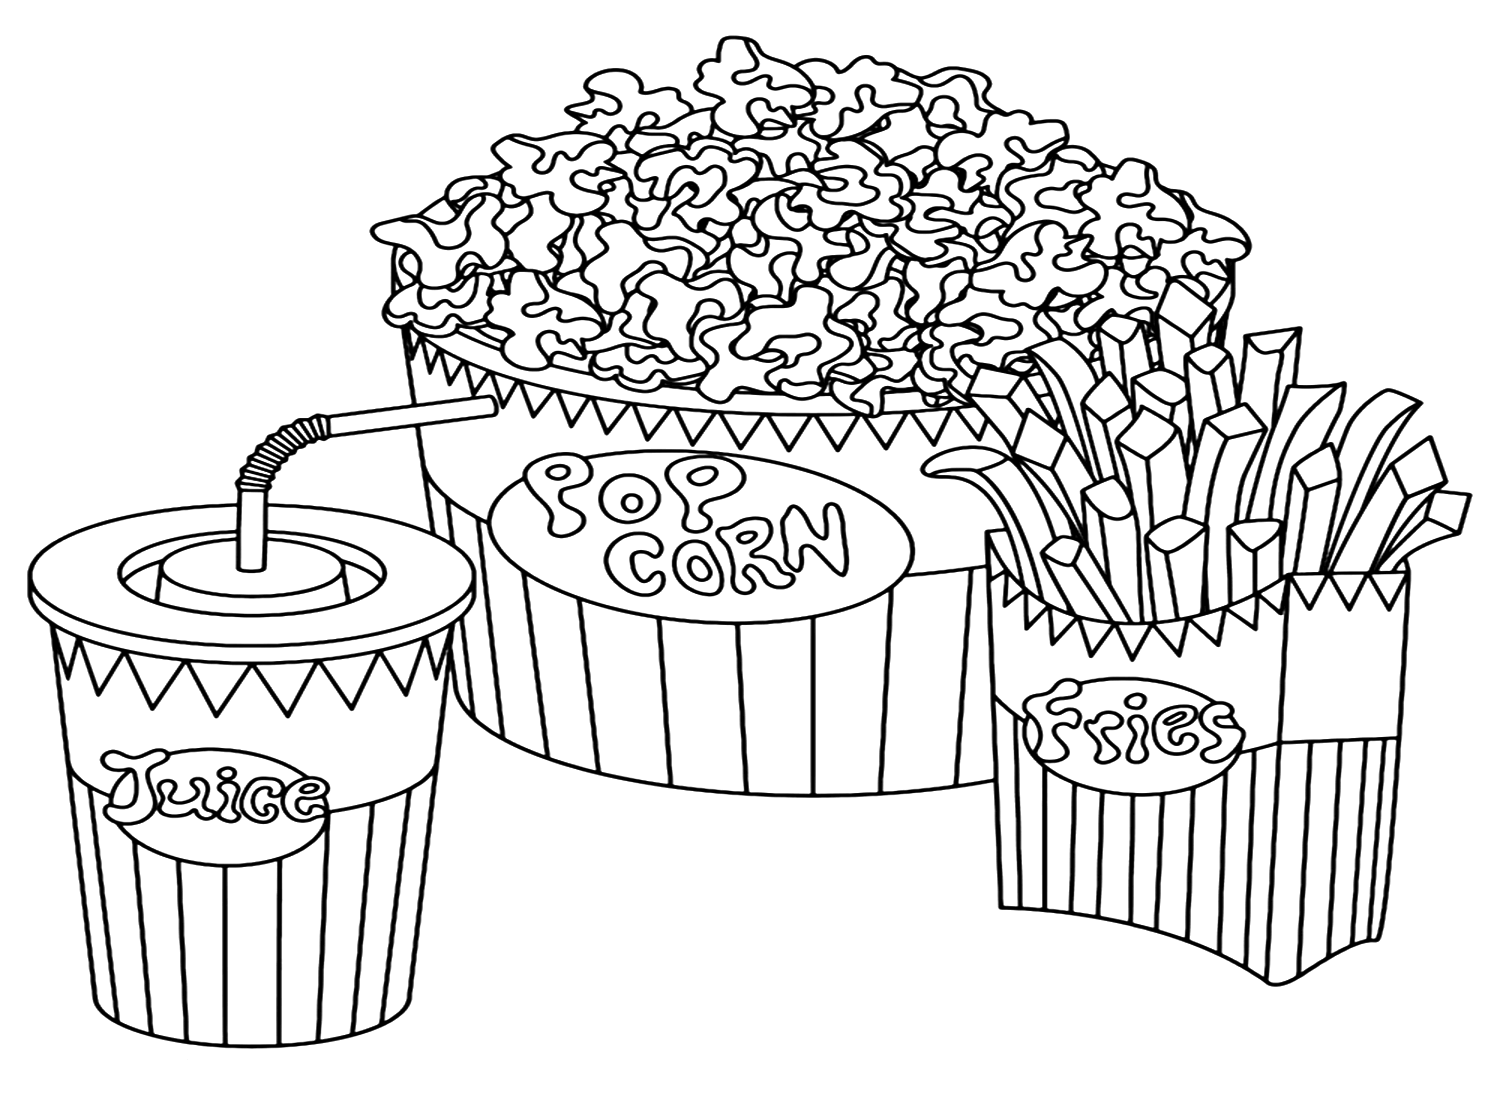 Página para colorir de pipoca para crianças from Popcorn